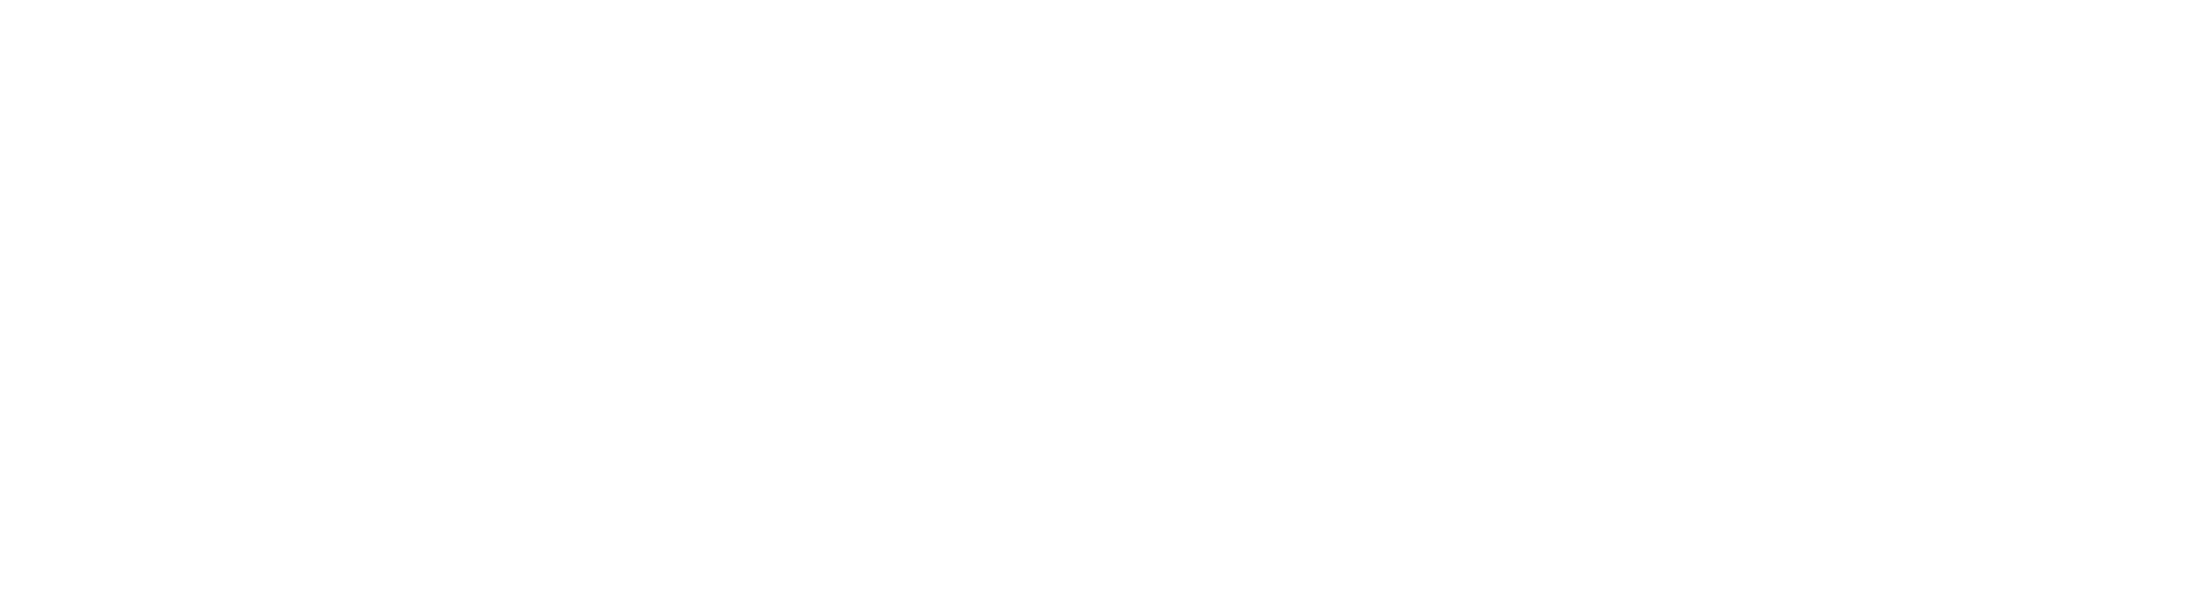 Heder Vesterålen Begravelsesbyrå Logo 2Hvit